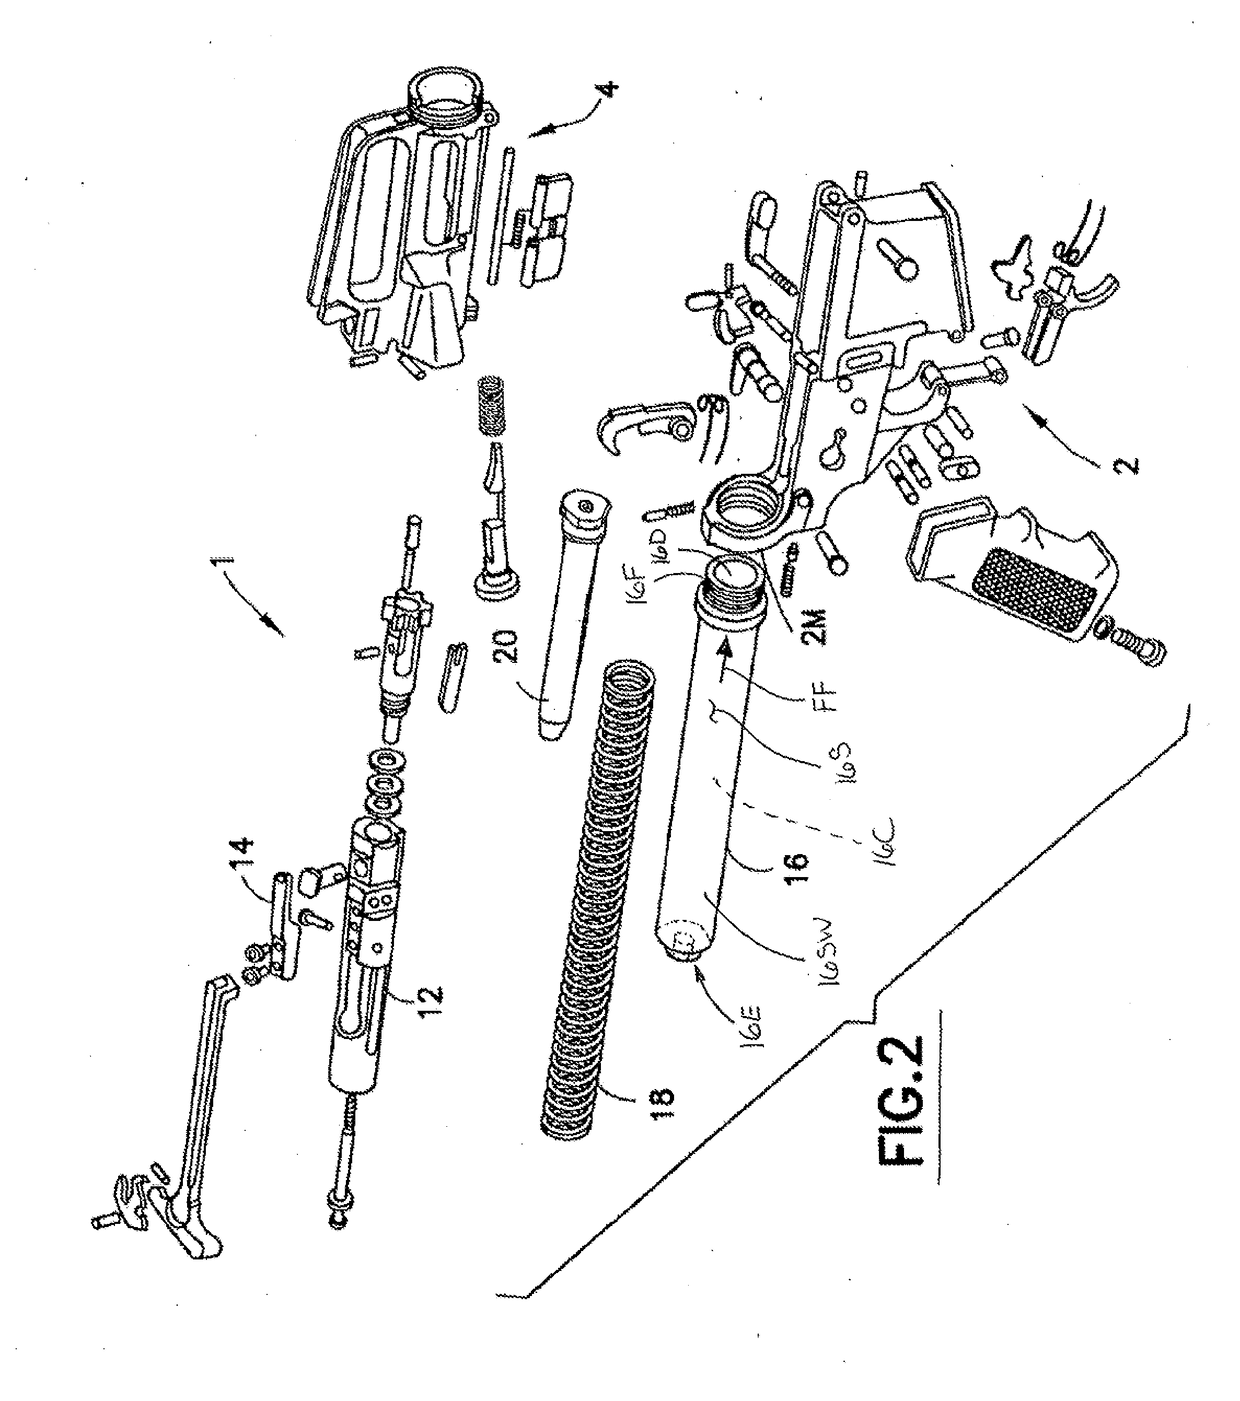 Firearm and firearm buffer assembly